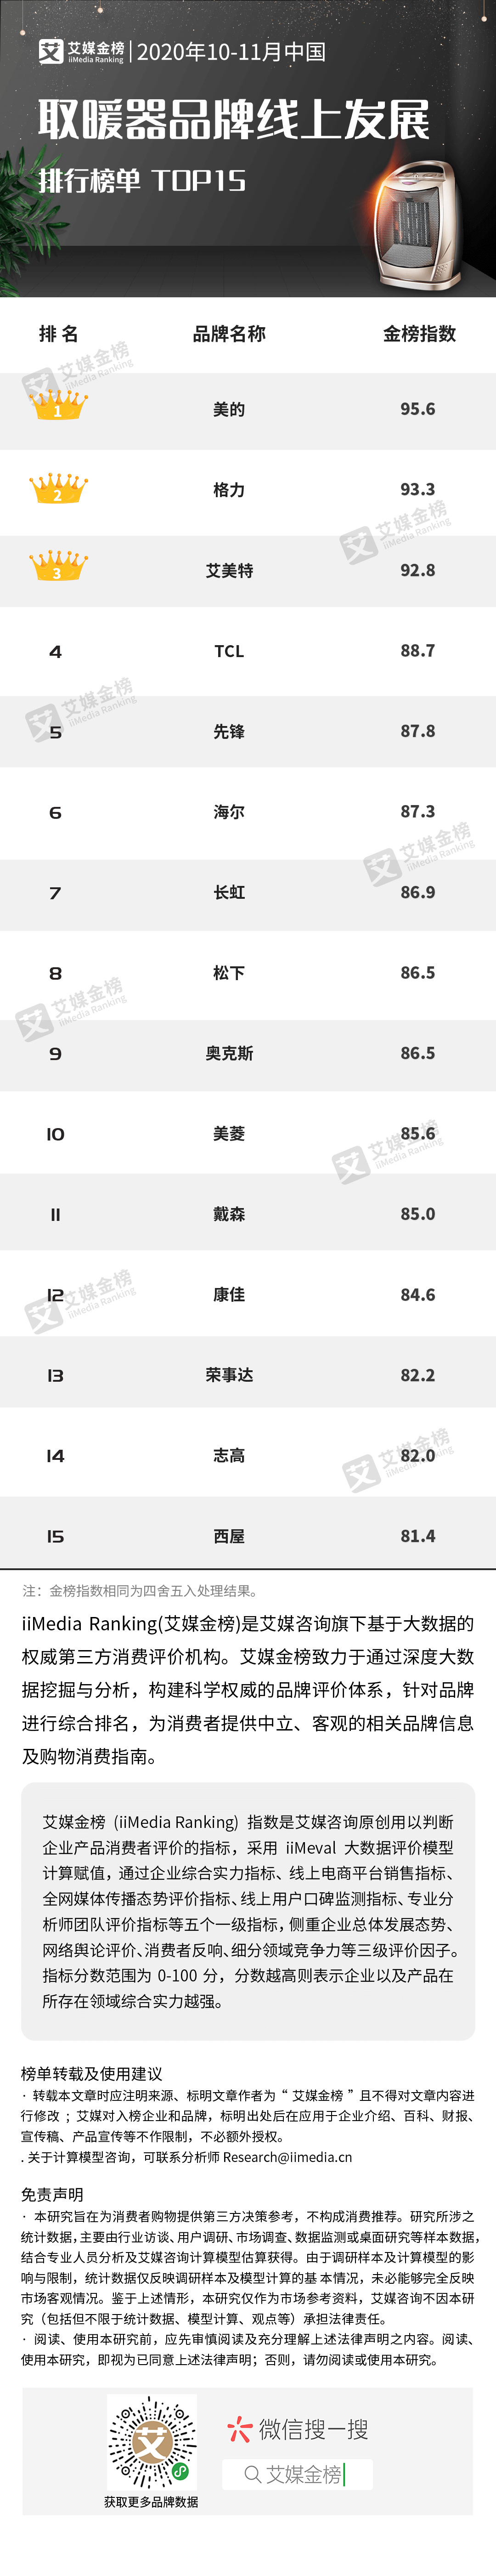 电暖气品牌排行榜_艾媒金榜|2020年10-11月中国取暖器品牌线上发展排行榜单TOP15